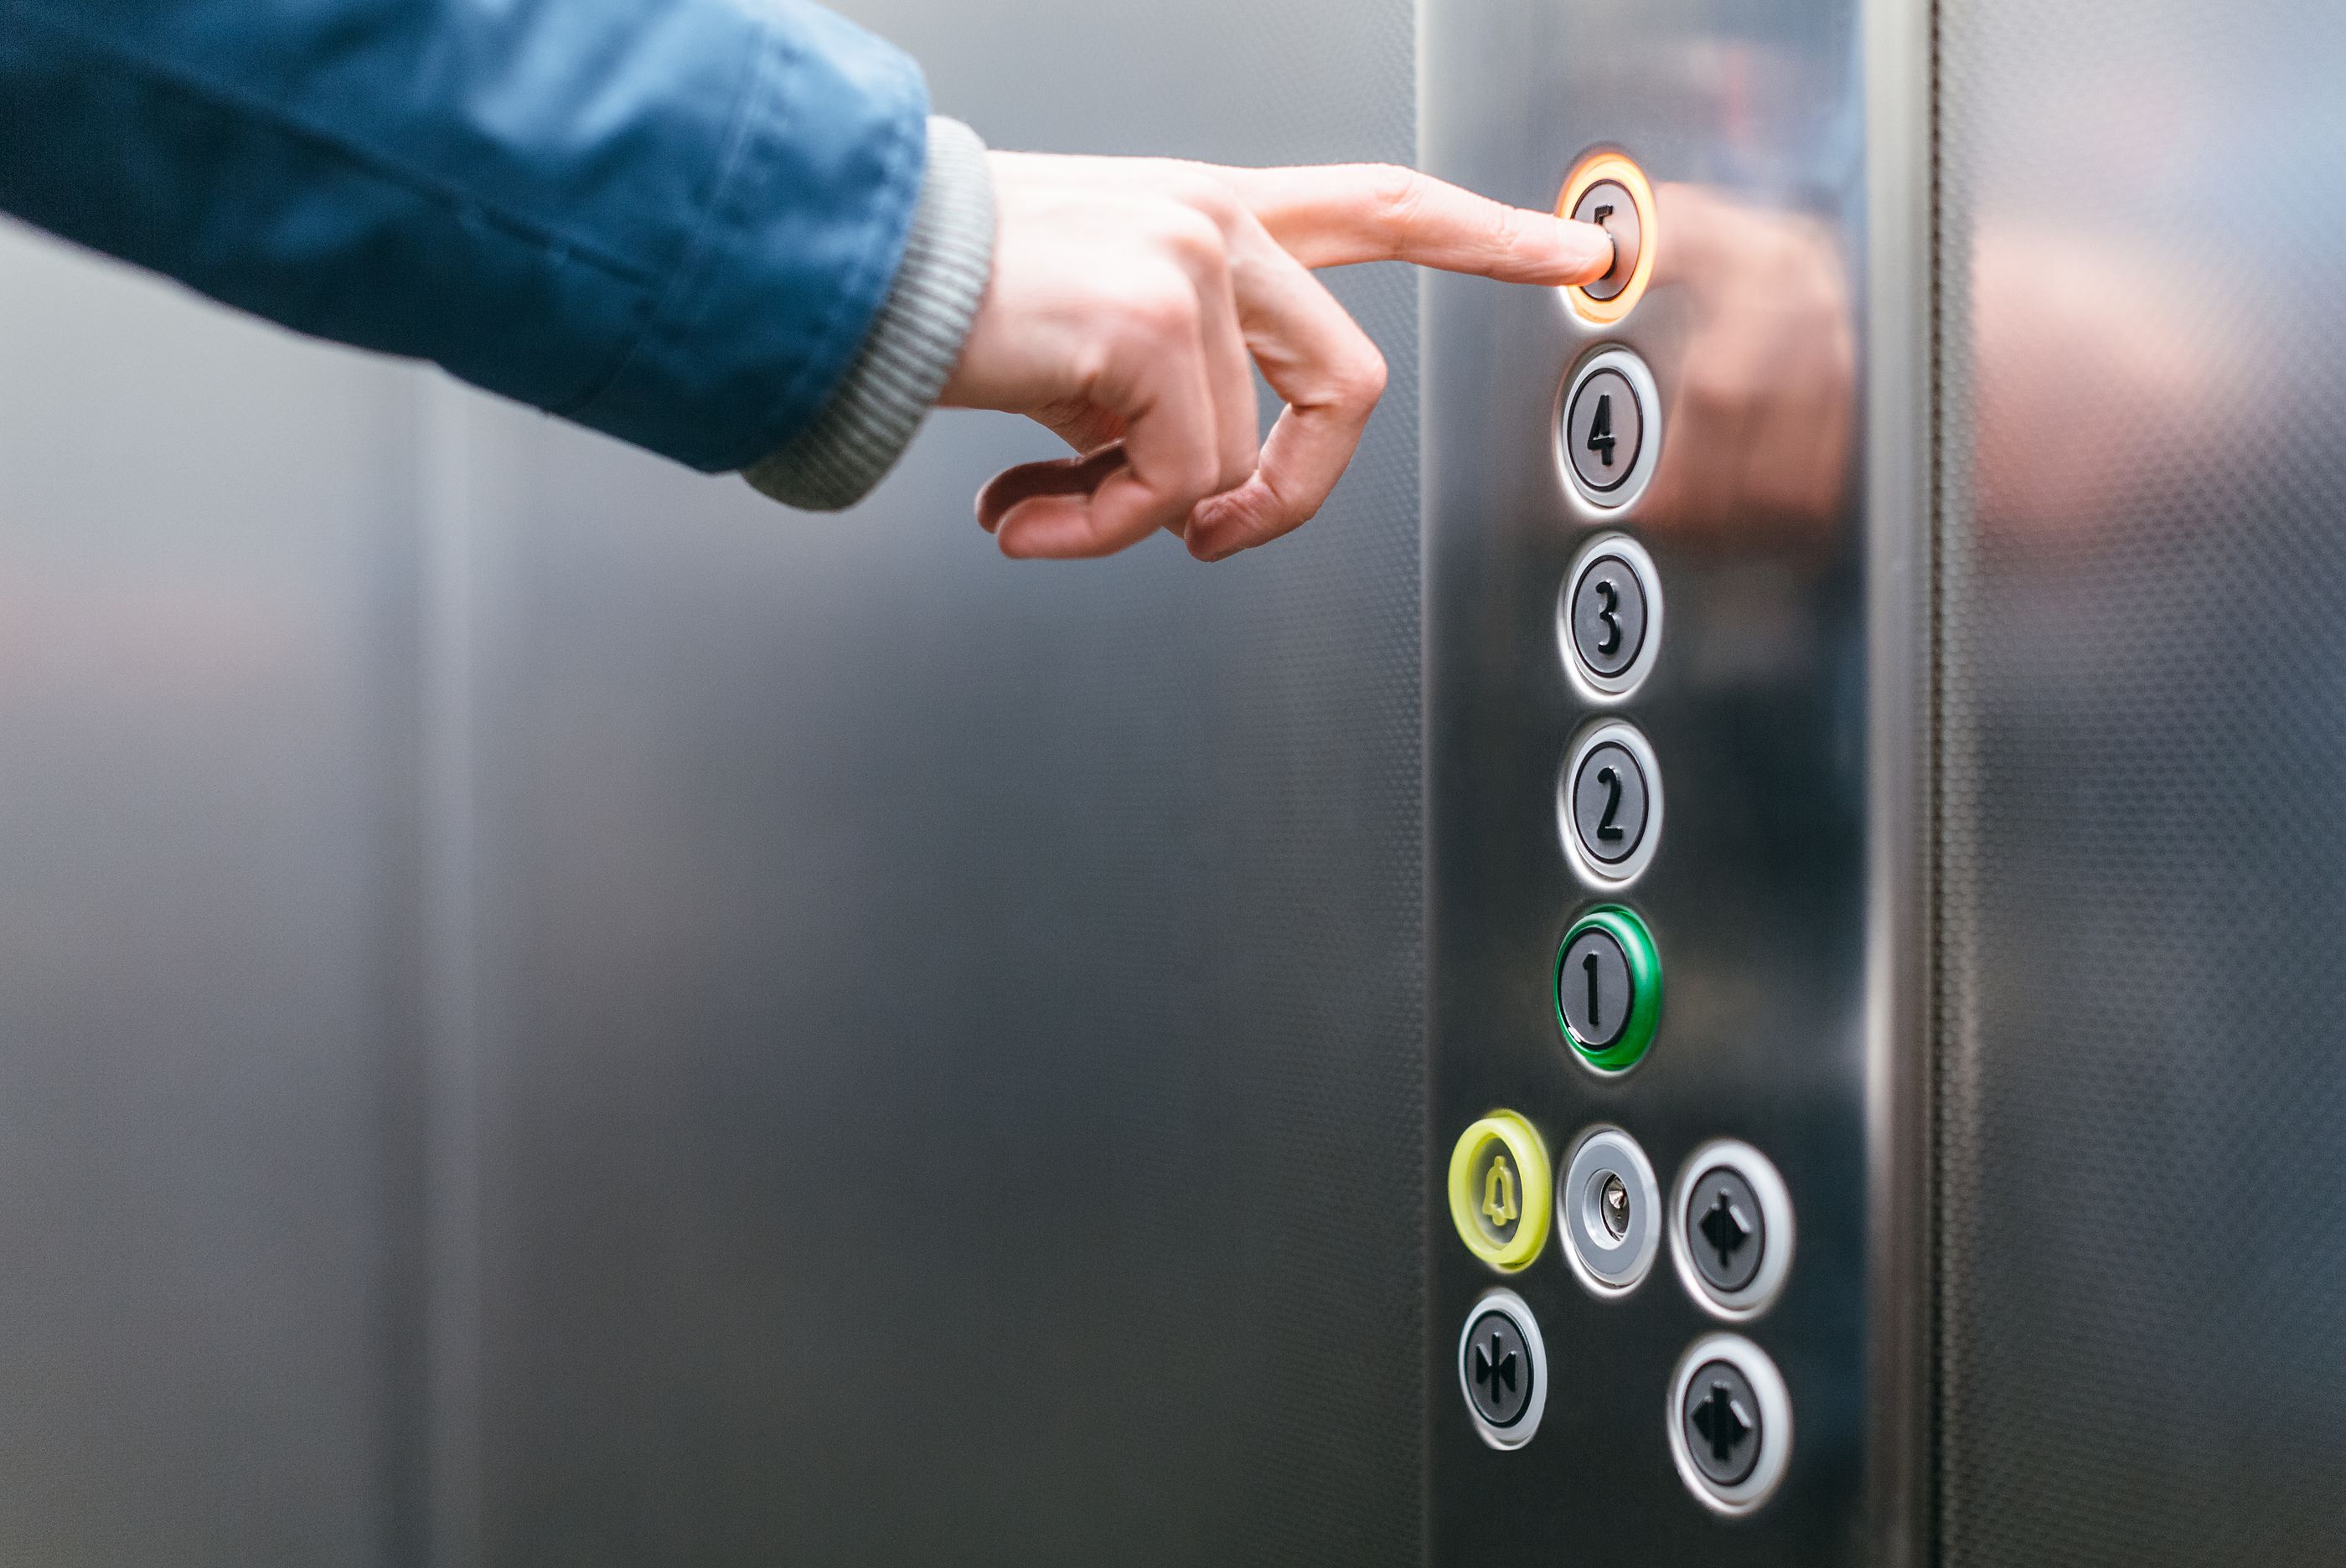 Los curiosos consejos de una comunidad de vecinos si el ascensor no funciona: "Ármate de paciencia". Foto: Bigstock